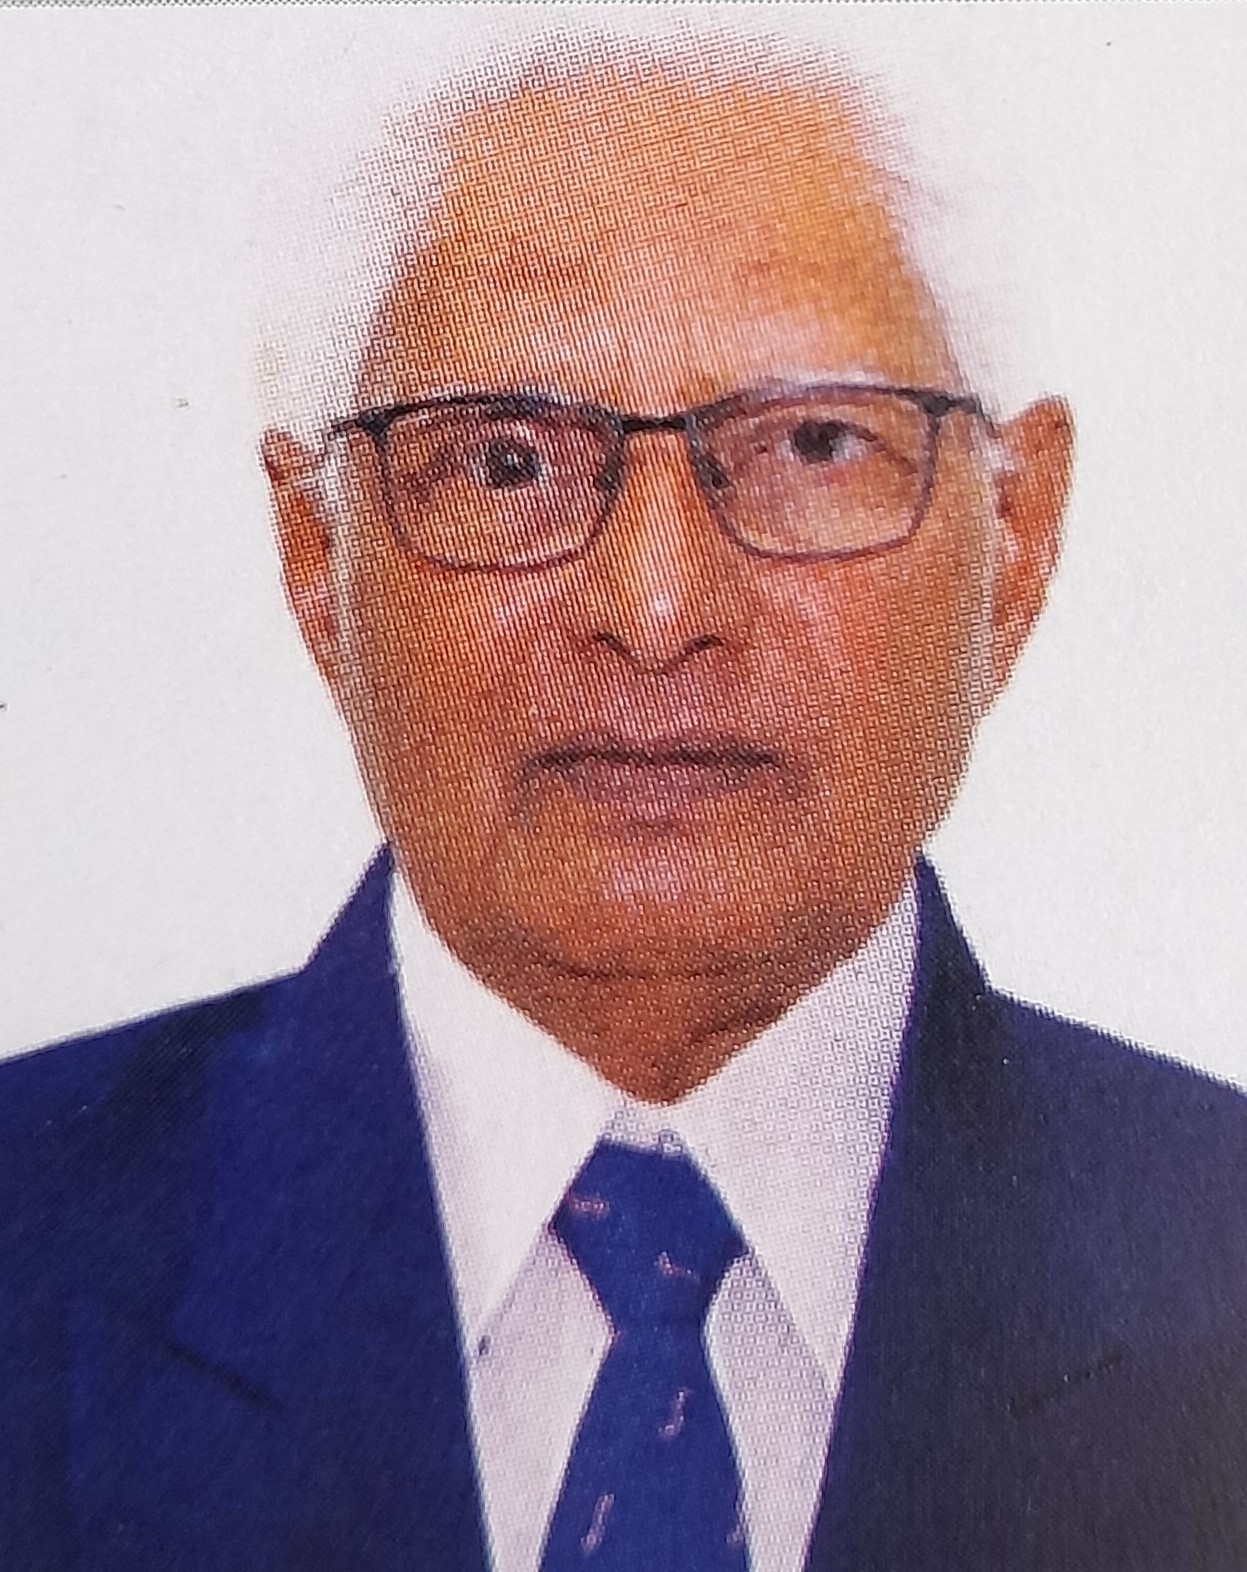 Shri Ratilal Chhaganlal Patel